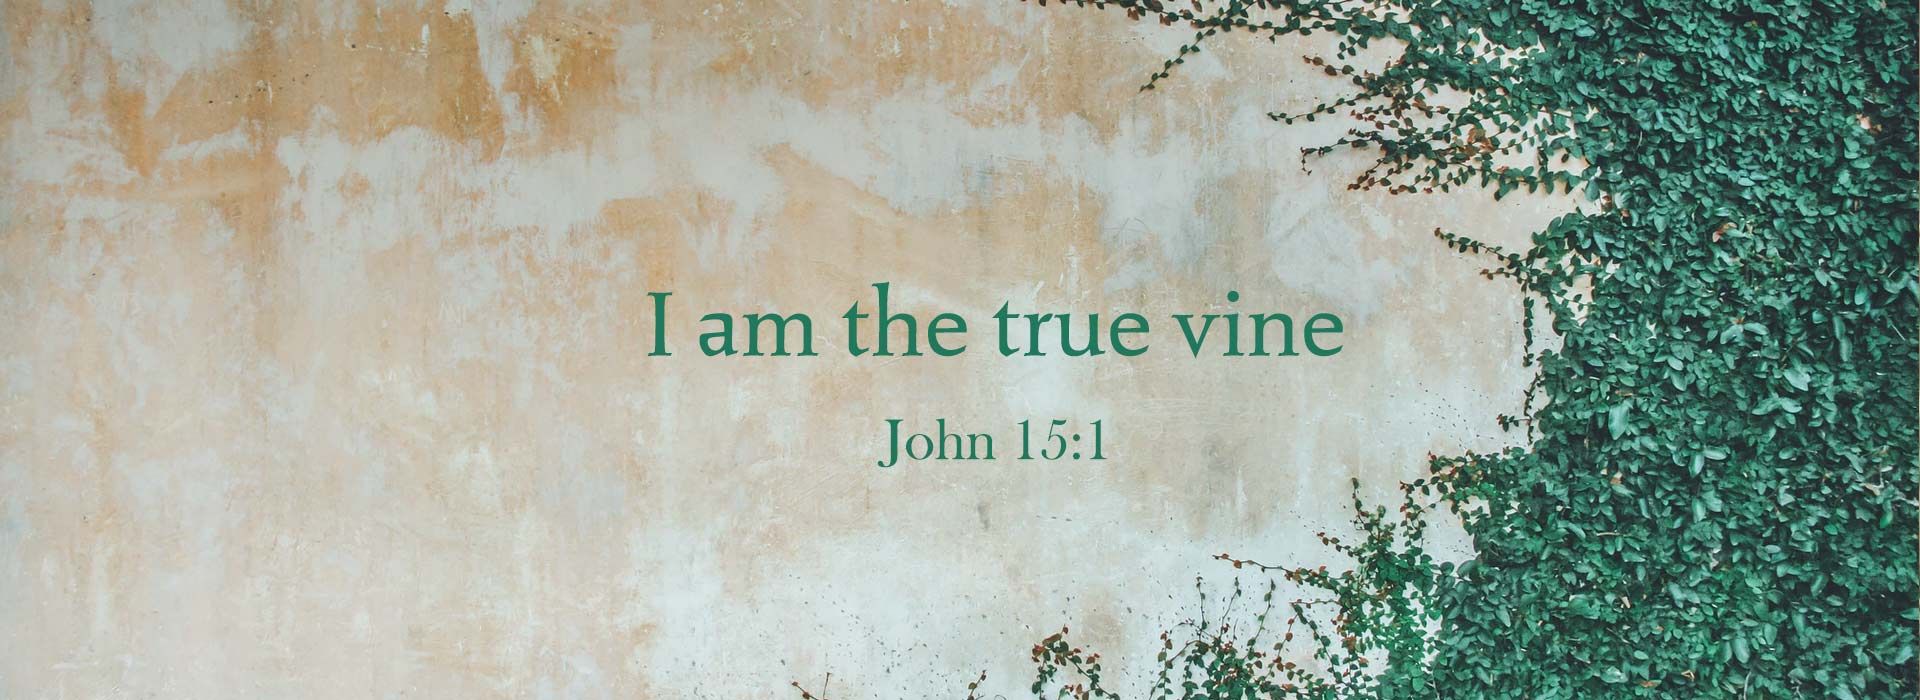 John 15:1